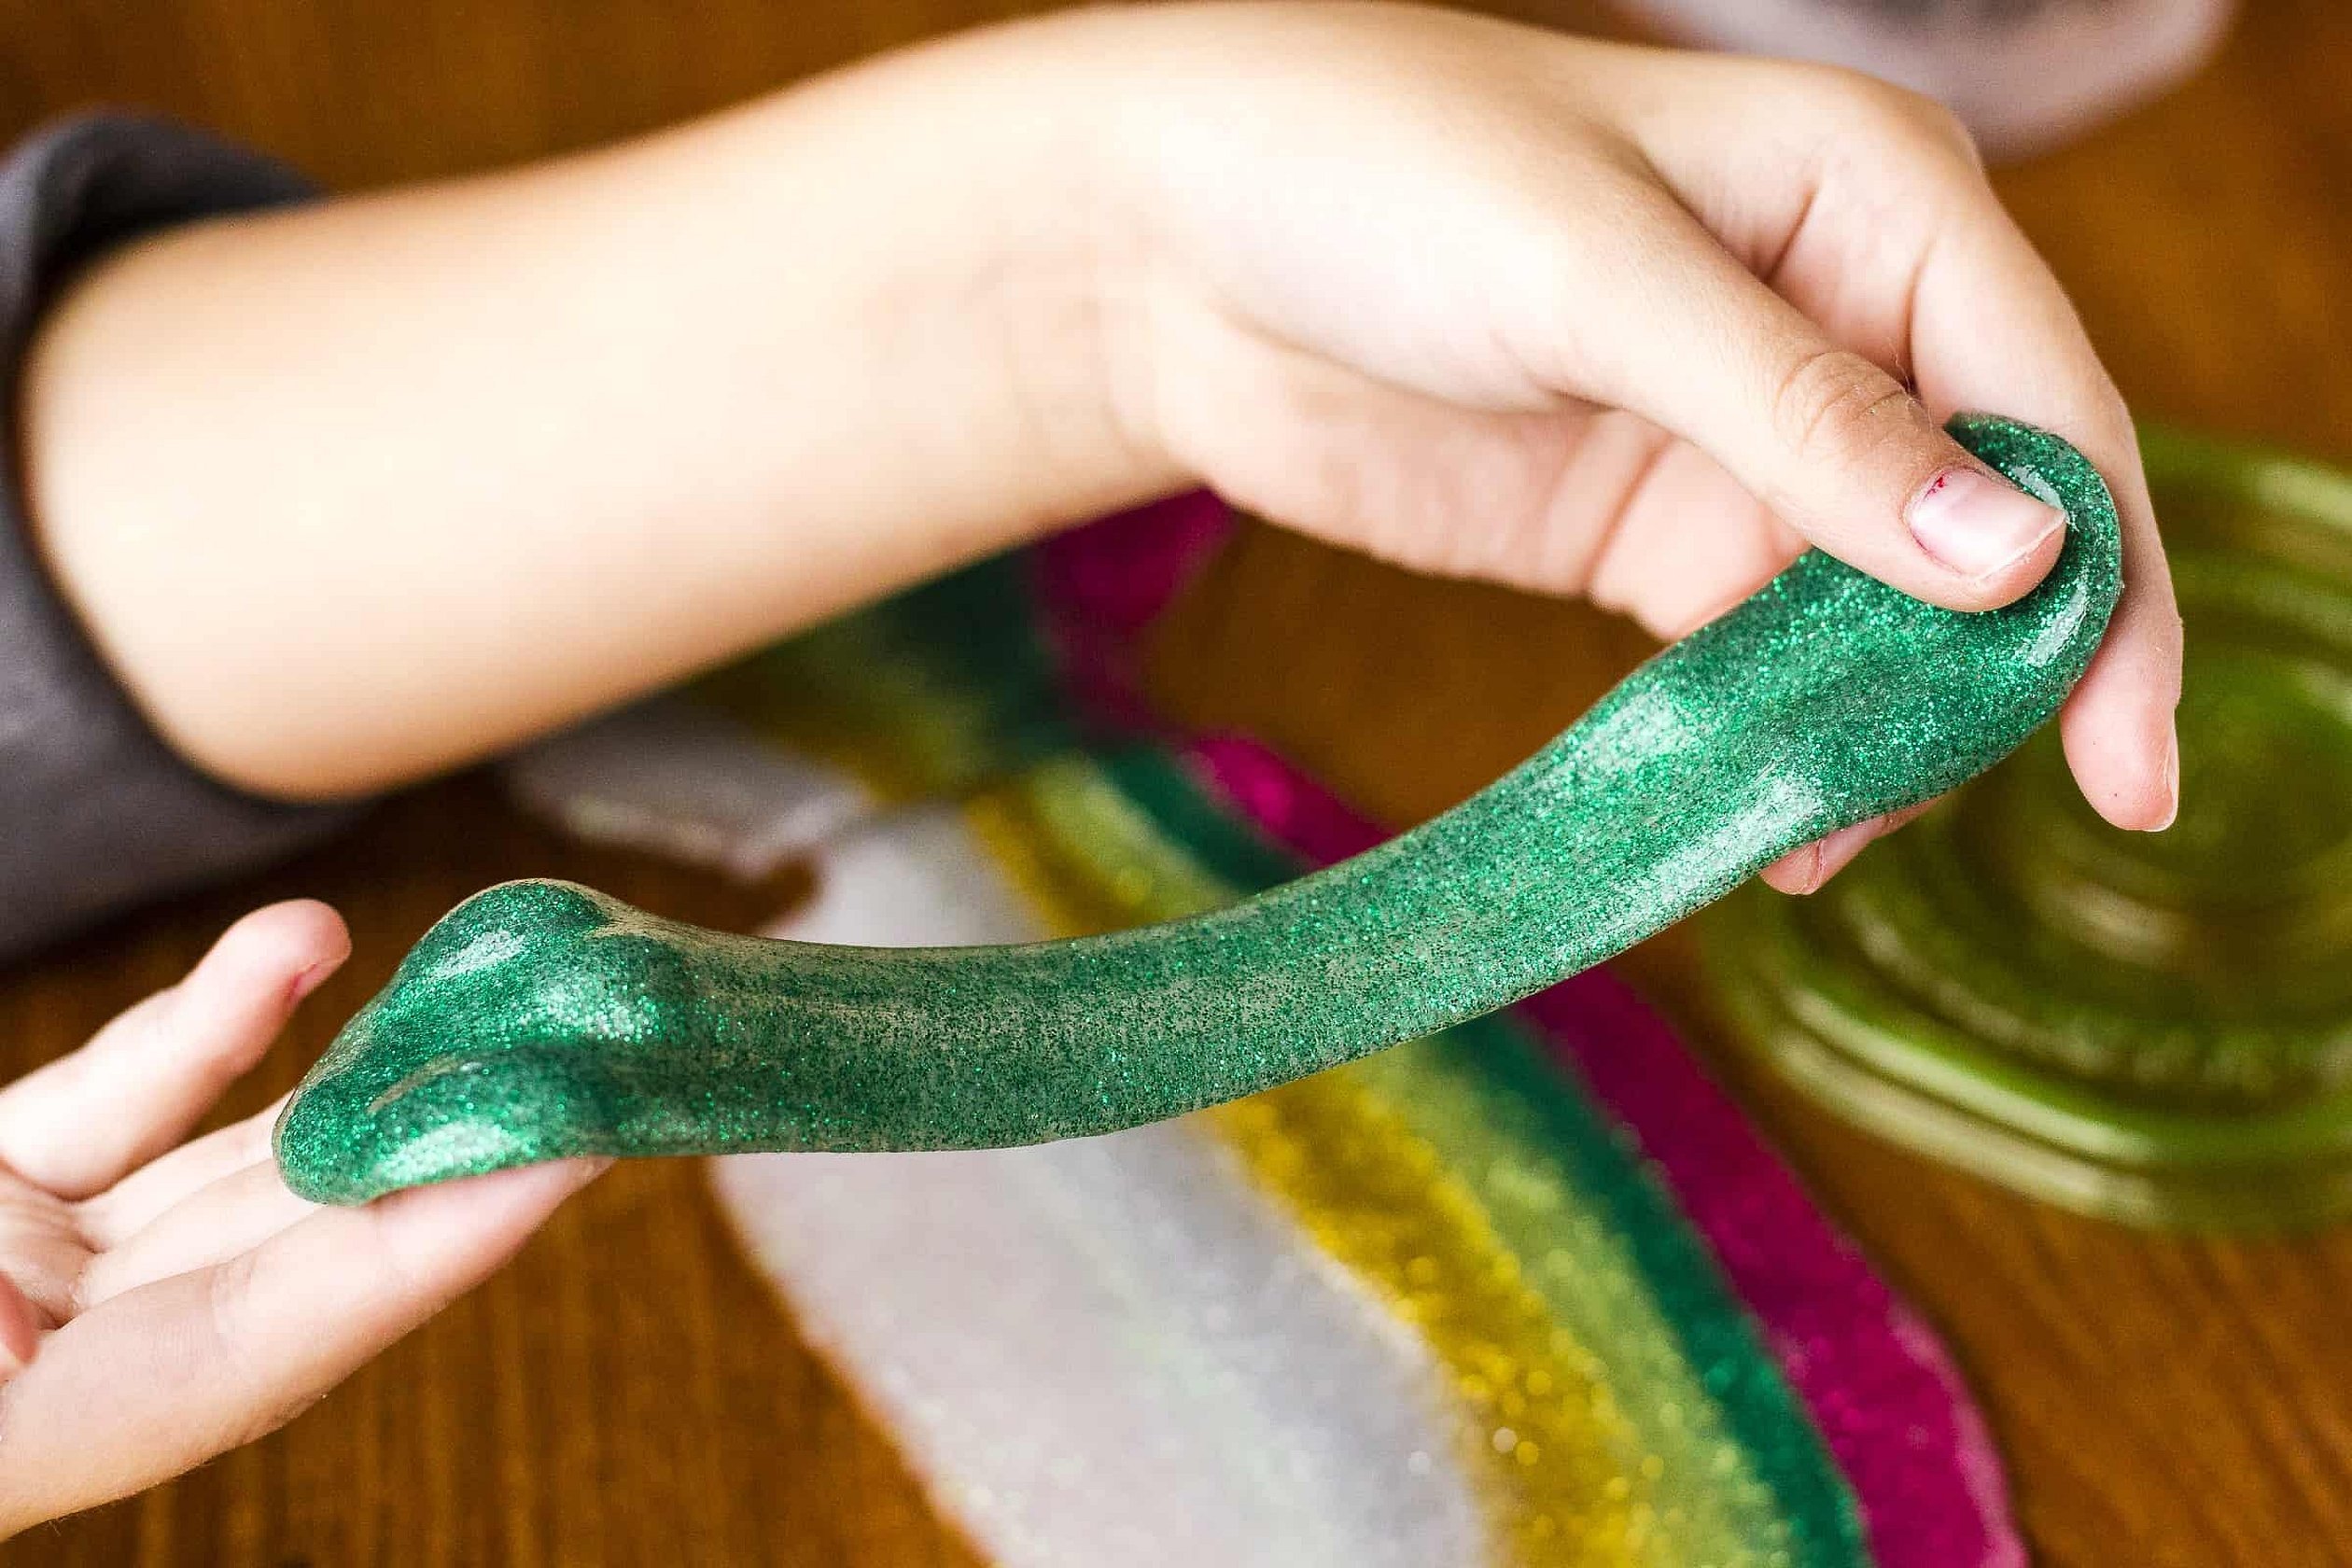 Как сделать очень легко лизуна: Как сделать лизуна из краски. Как сделать лизун в домашних условиях быстро и легко? Самые простые рецепты и правила хранения игрушки. Что такое «Лизун»